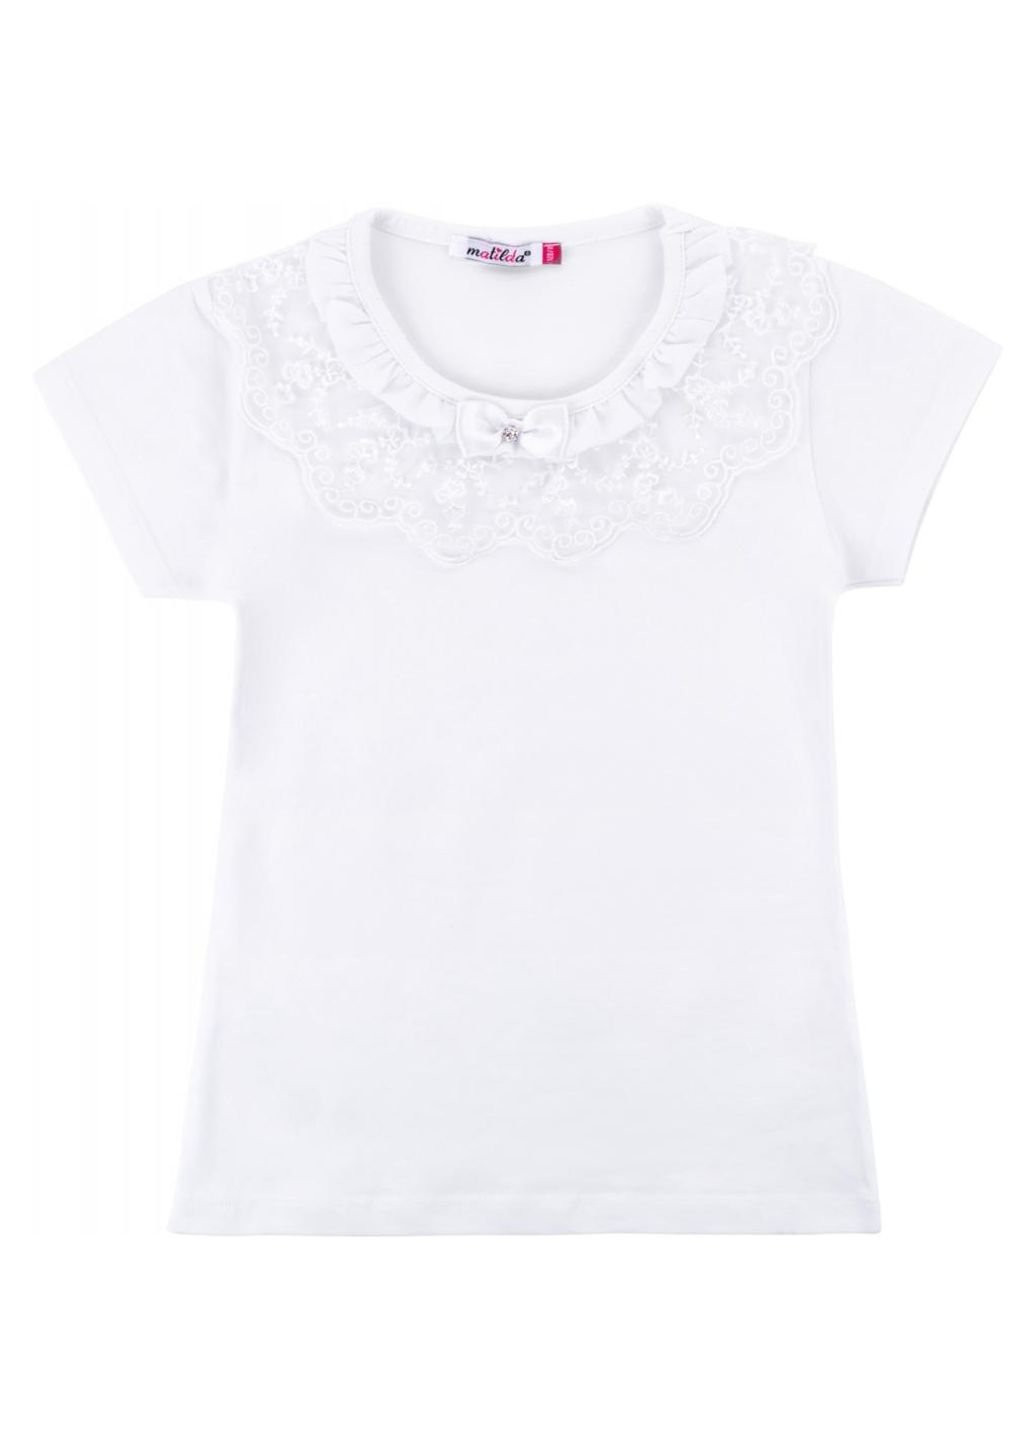 Белая демисезонная футболка детская с коротким рукавом и кружевной оборкой (7134-164g-white) Matilda